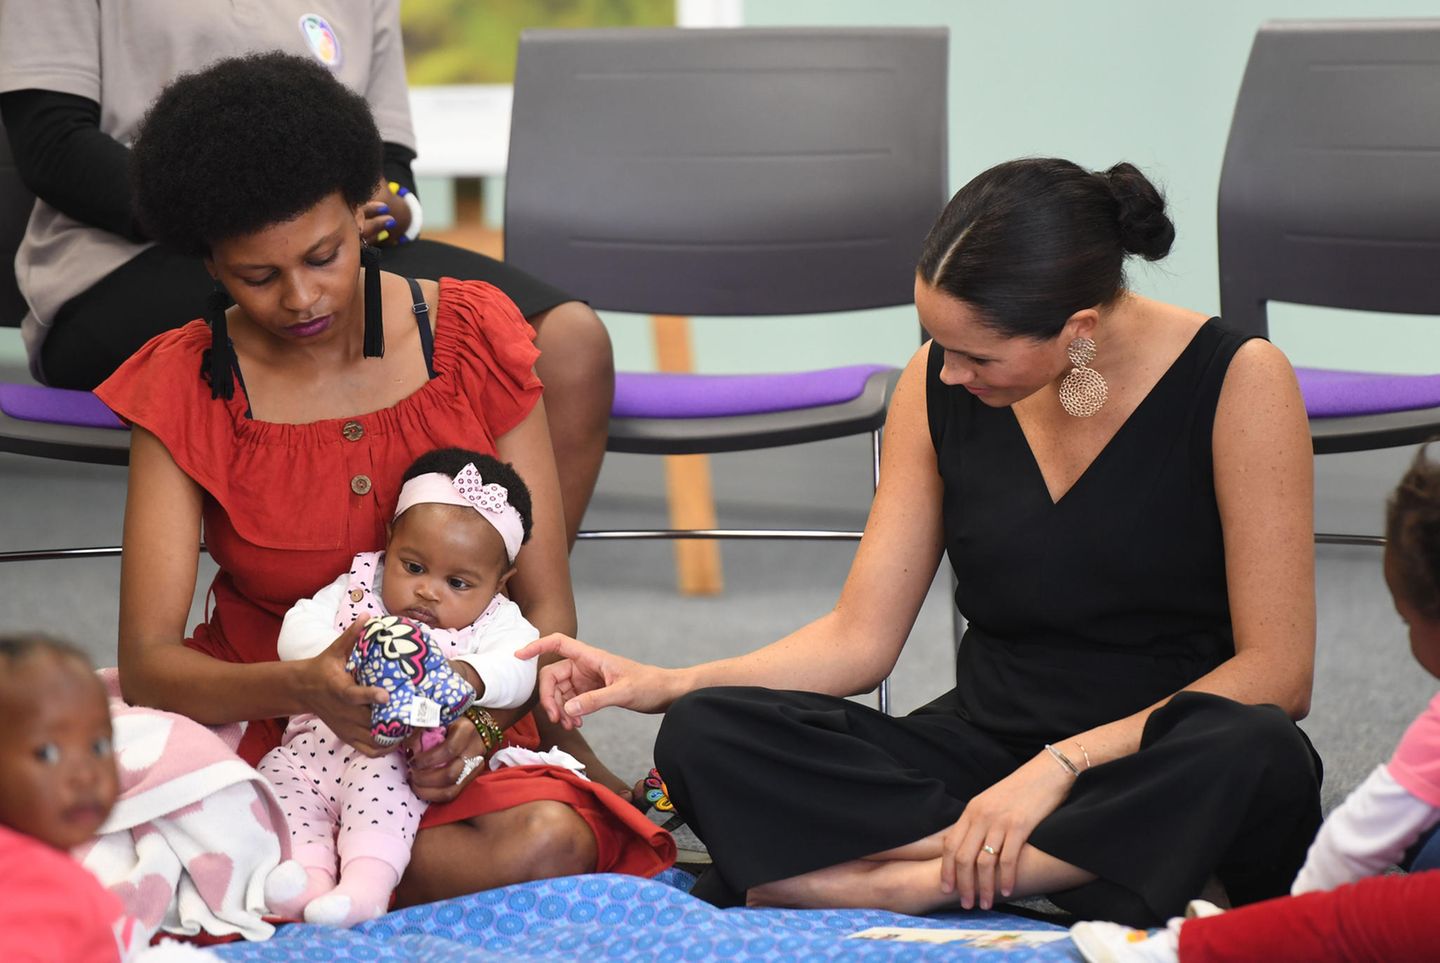 Herzogin Meghan+  Prinz Harry in Afrika: Meghan Markle sitzt auf dem Boden und berührt ein Baby